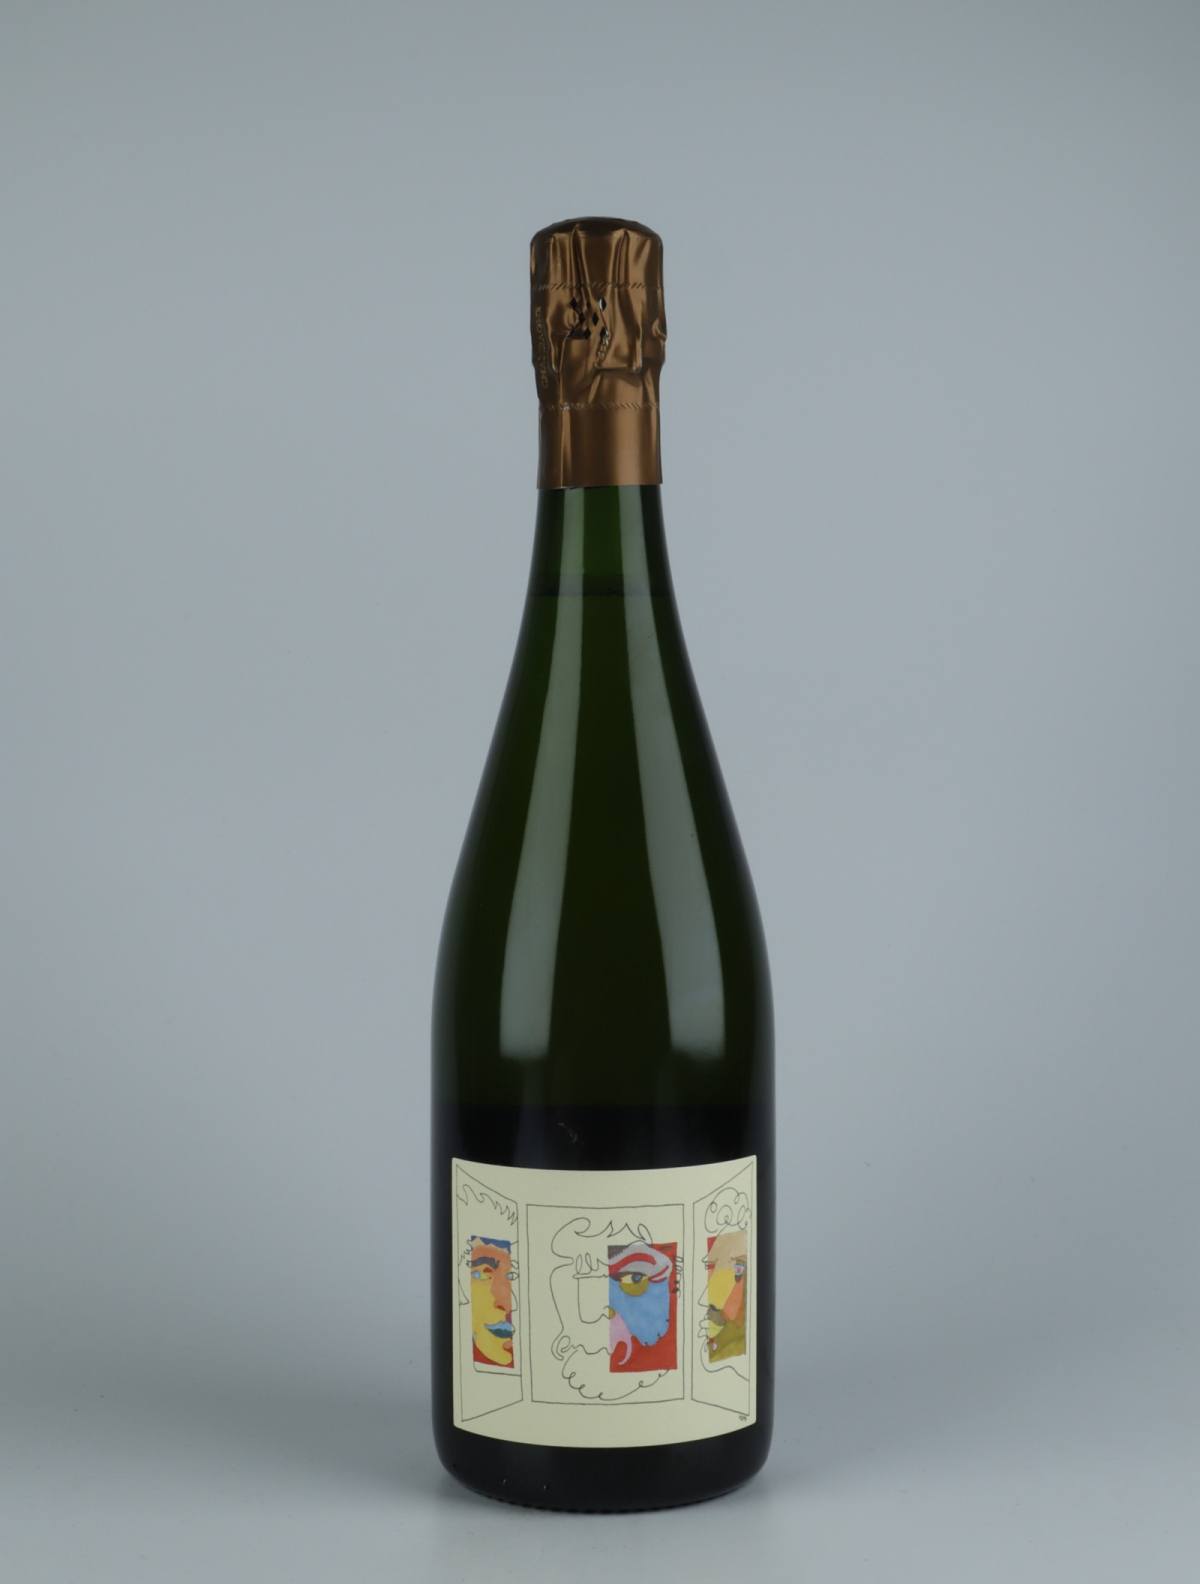 A bottle N.V. Triptyque - Brut Nature Sparkling from Stroebel, Champagne in France